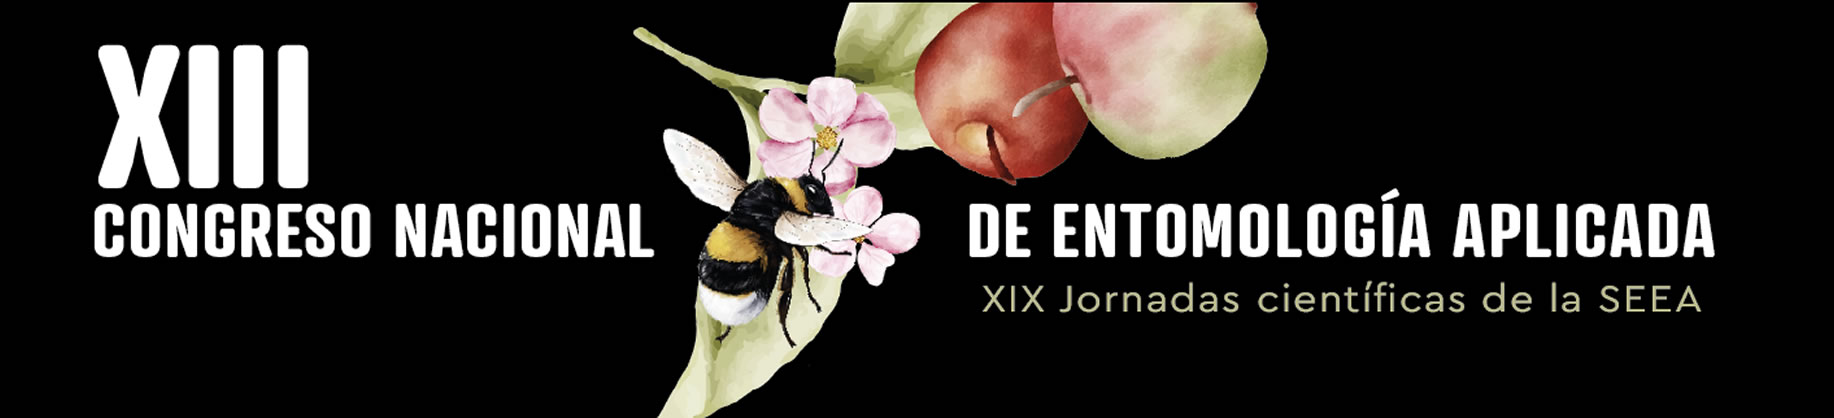 XIII Congreso Nacional de Entomología Aplicada – XIX Jornadas Científicas de la SEEA 